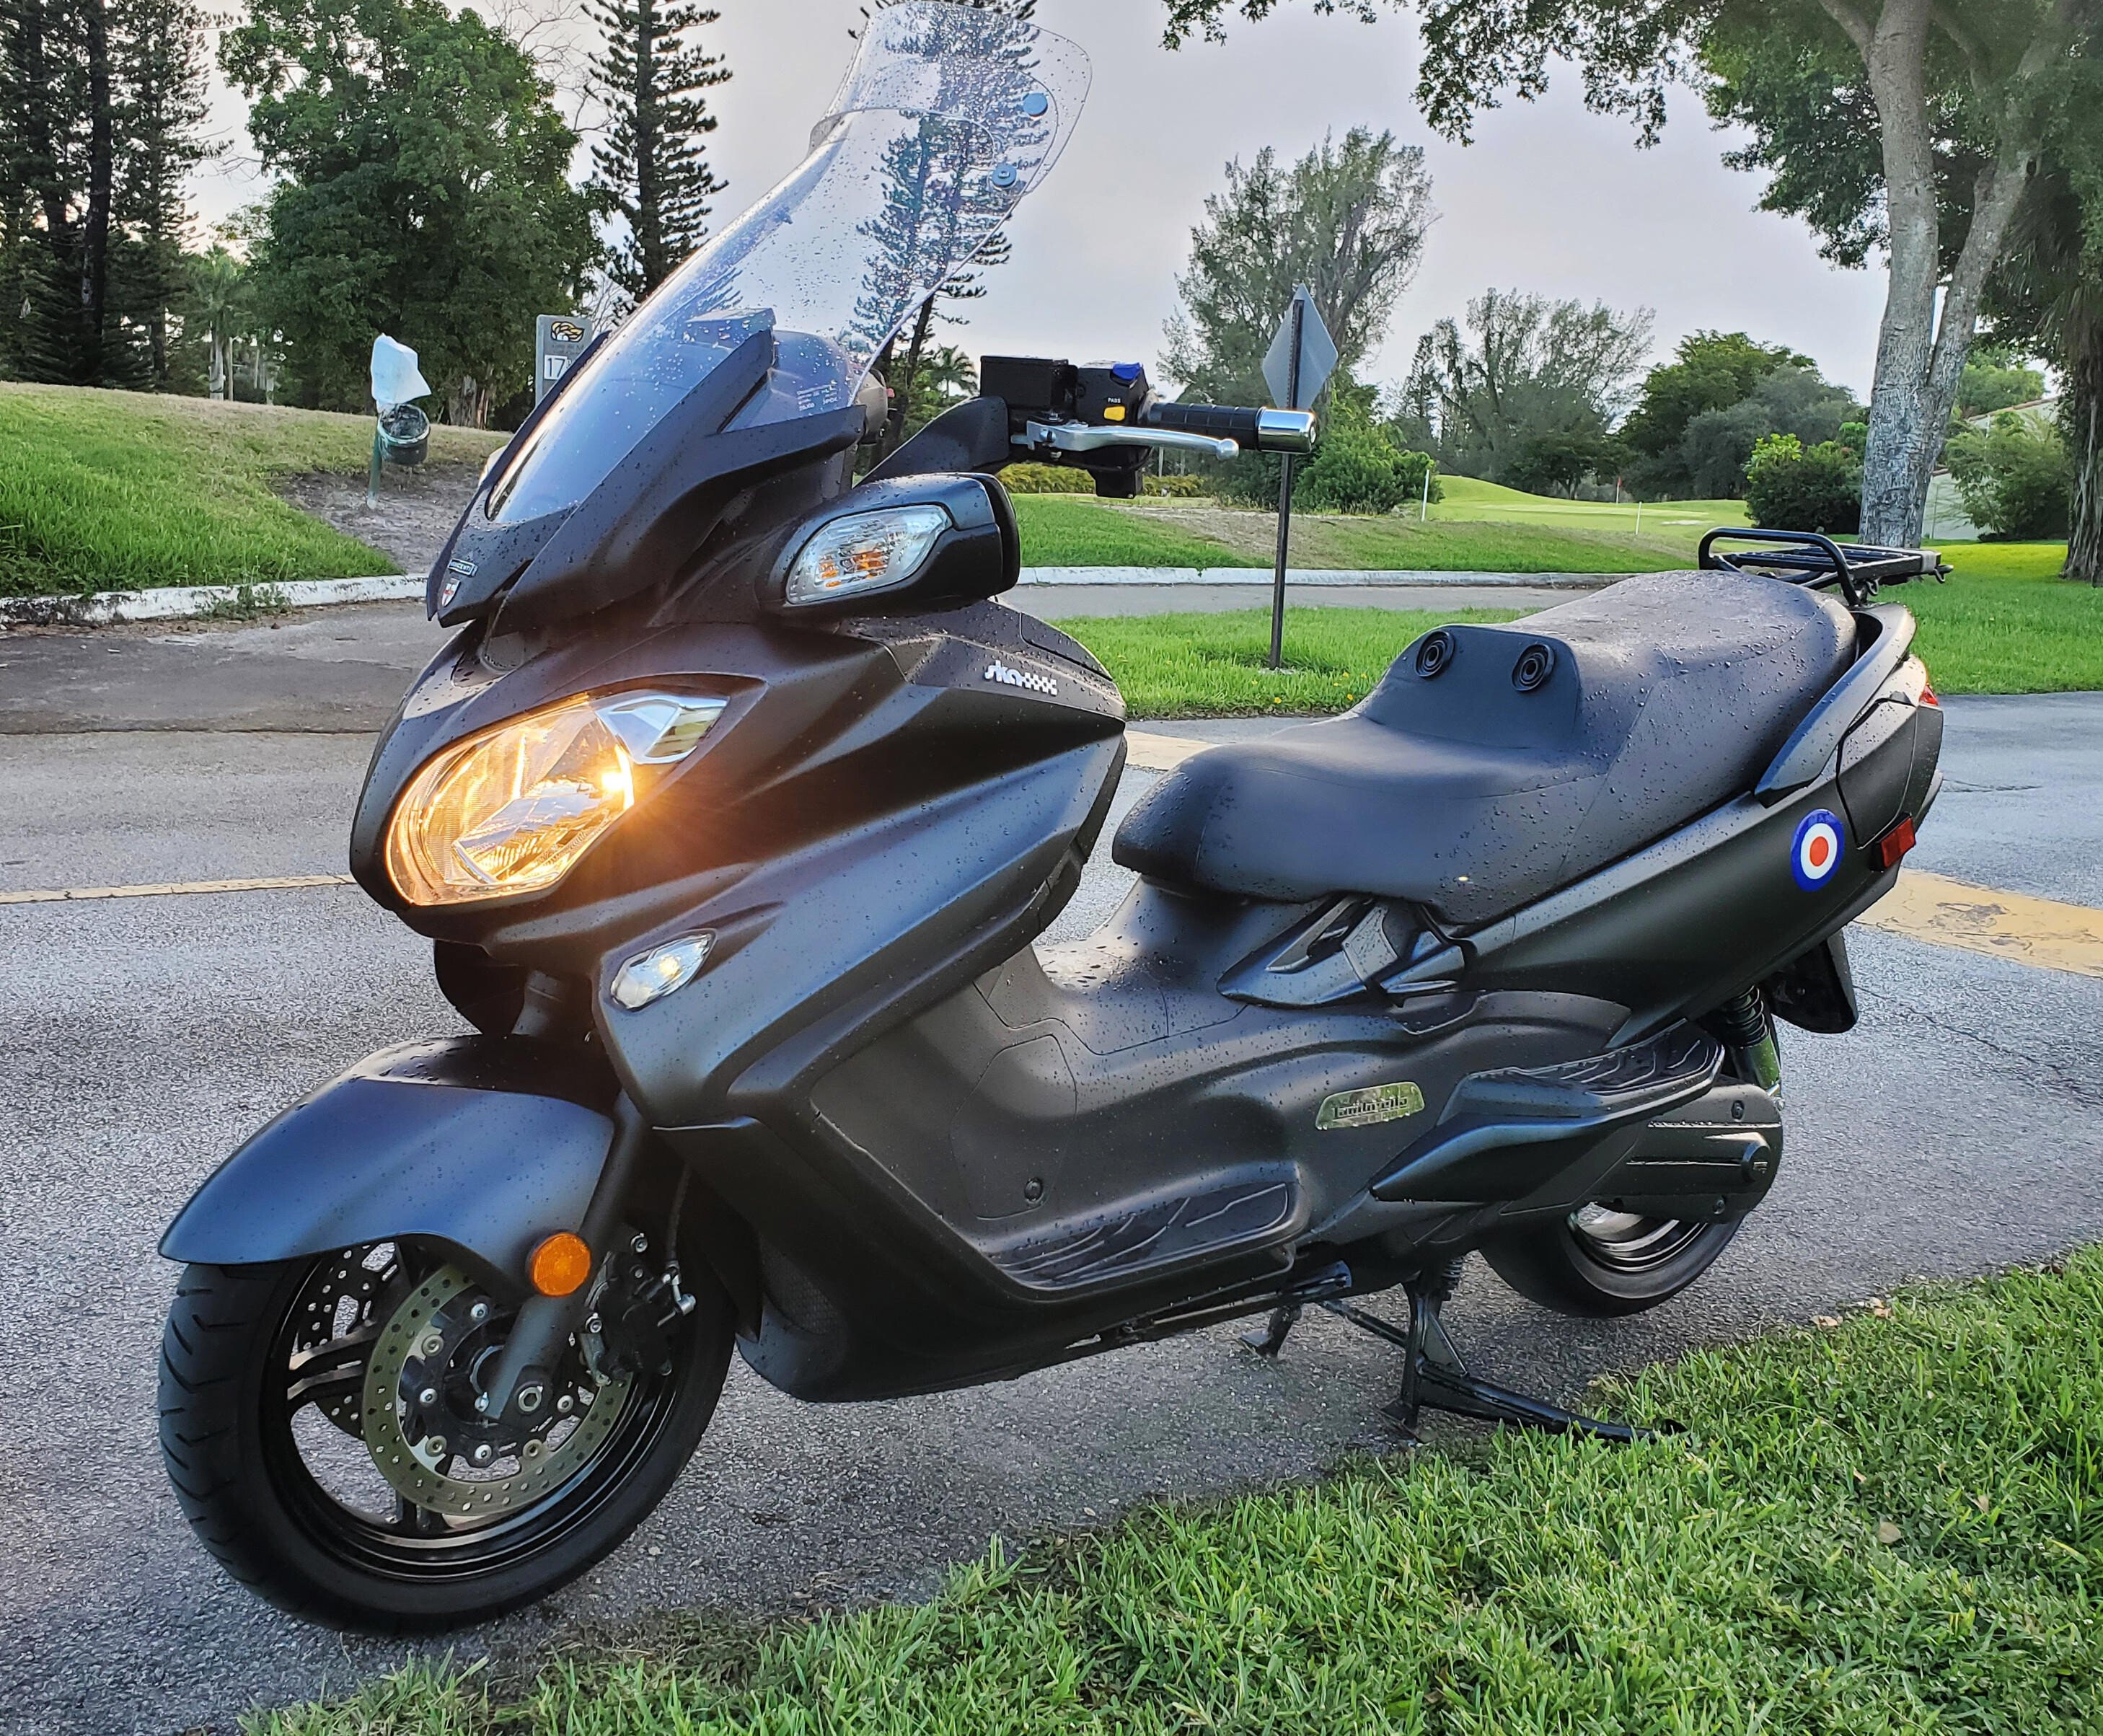 2016 Suzuki Burgman 650 Motorcycles for Sale Motorcycles